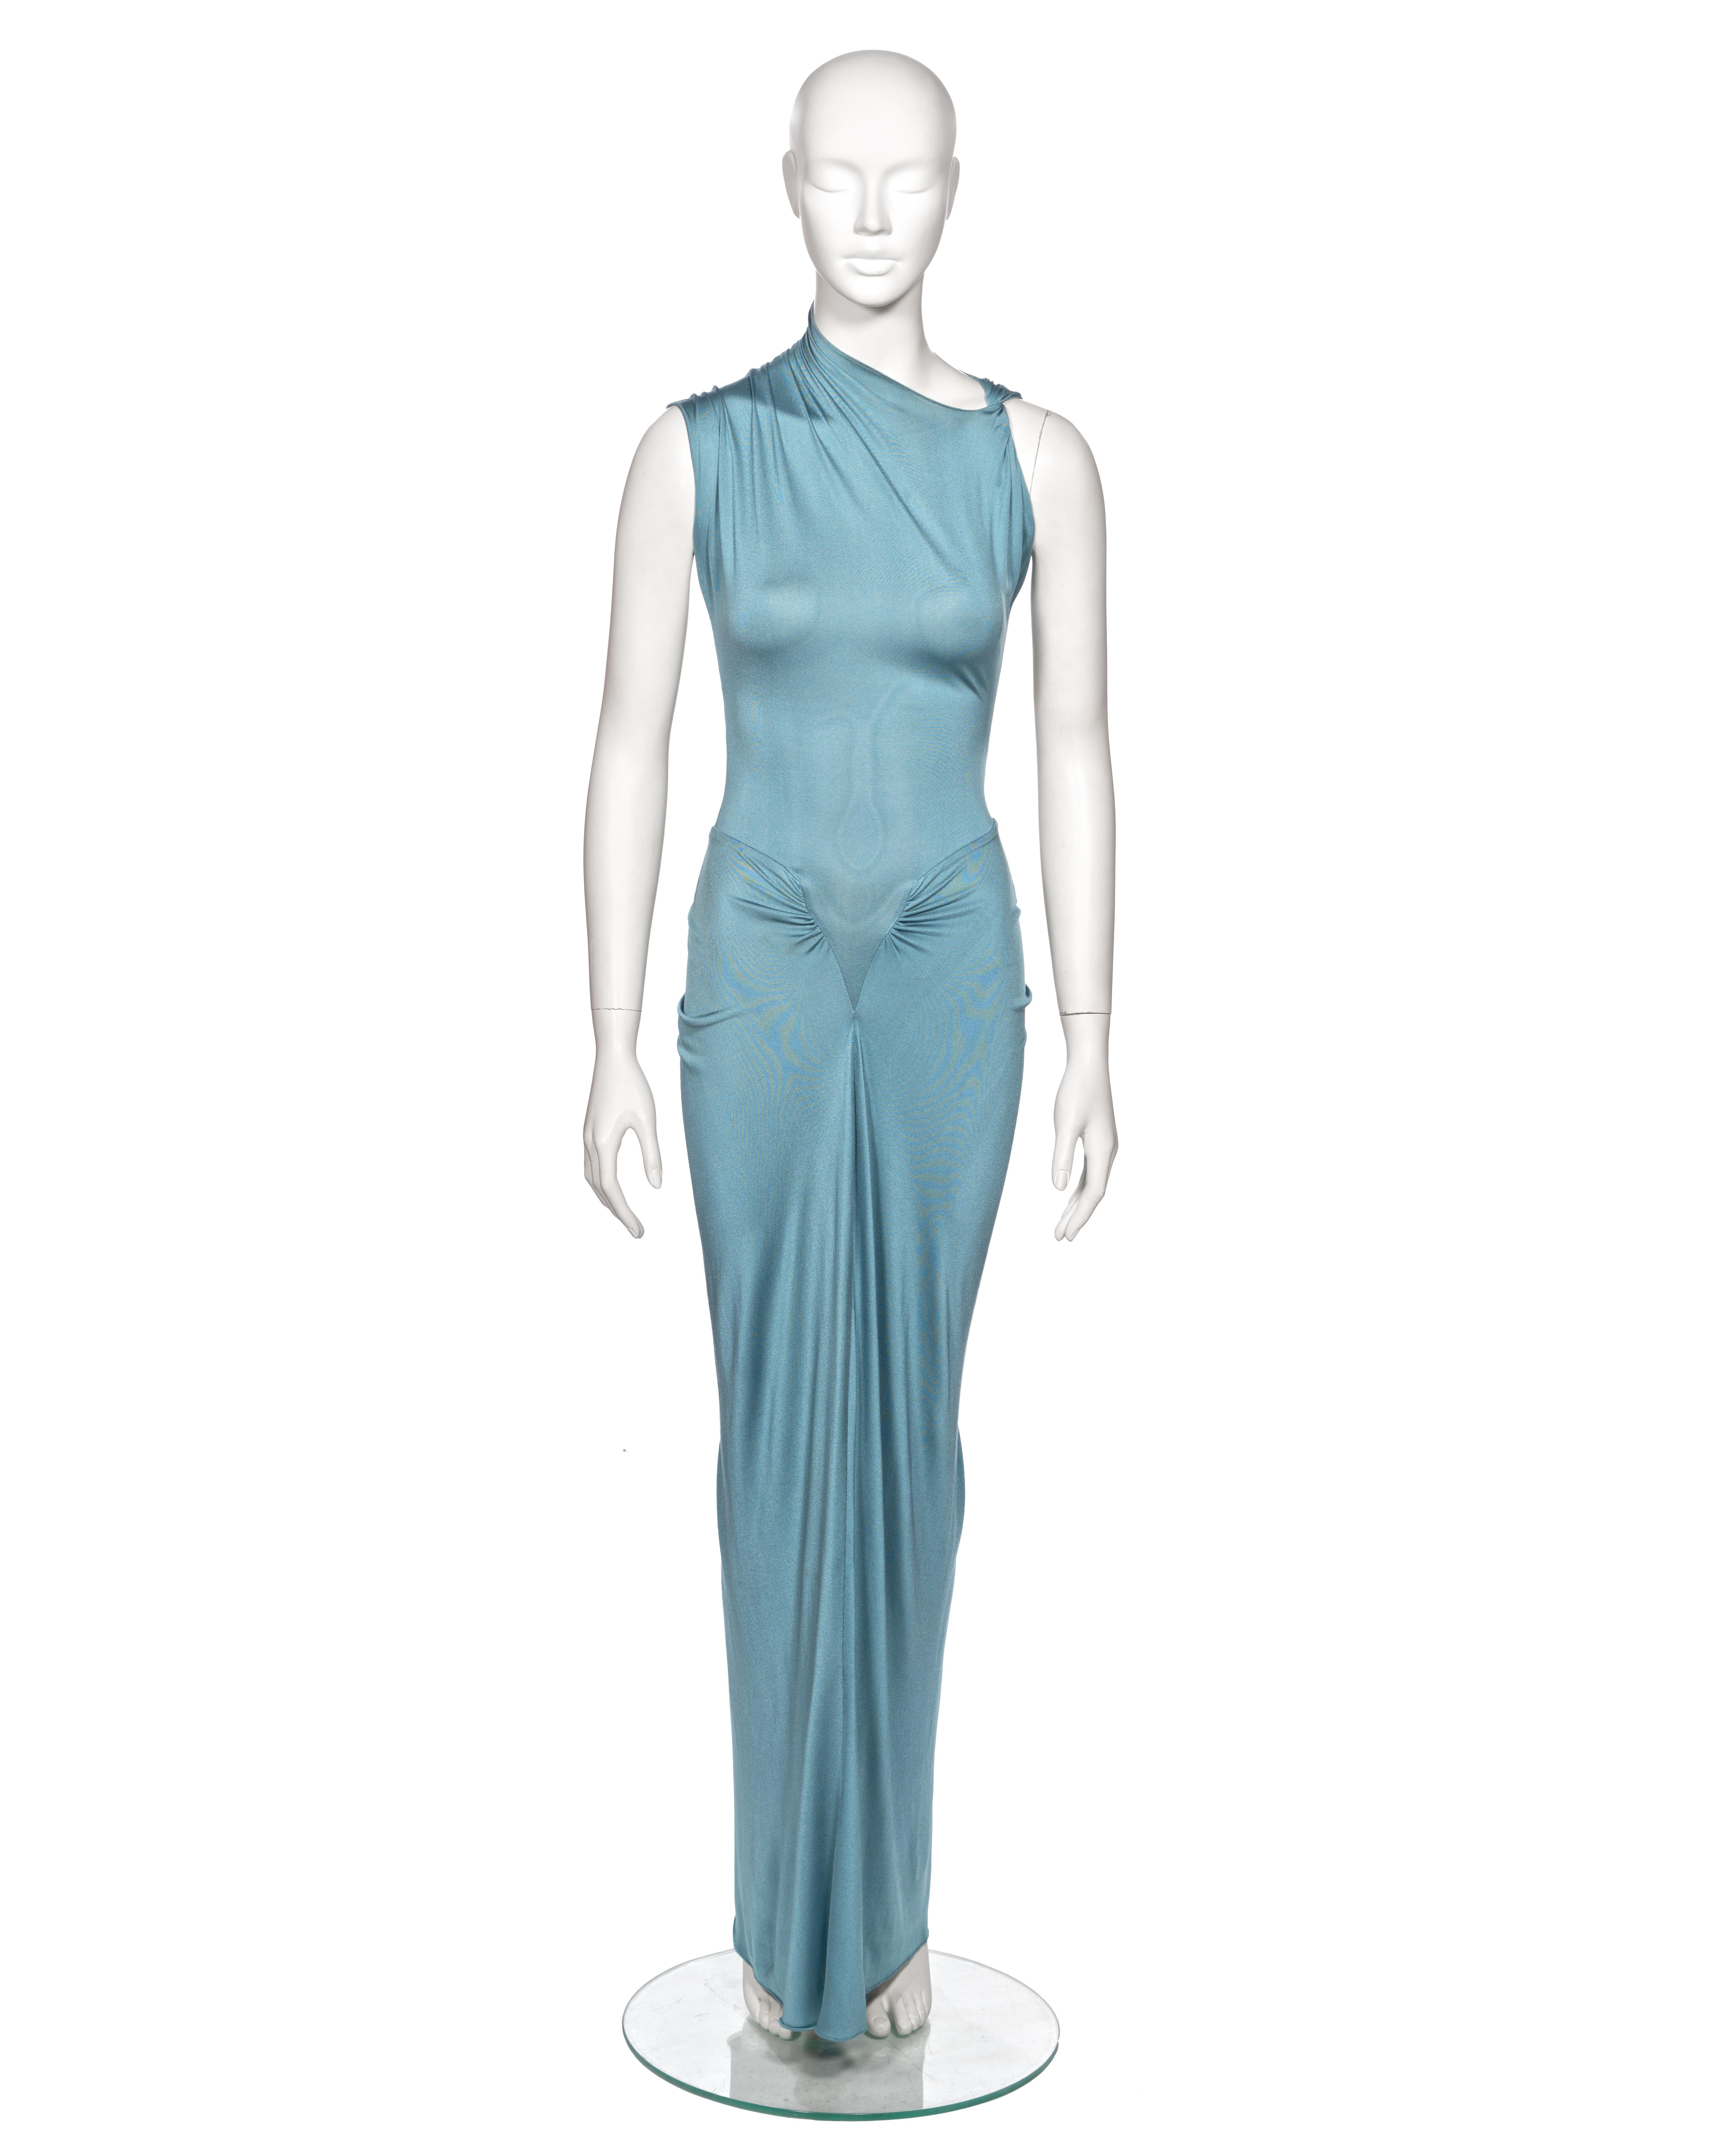 ▪ Rare Christian Dior Evening Dress
▪ Directeur de la création : John Galliano
▪ Printemps-été 2000
▪ Vendu par One Of A Kind Archive
▪ Confectionné en jersey de soie bleu poudré, ce vêtement incarne l'élégance et la modernité
▪ Décolleté